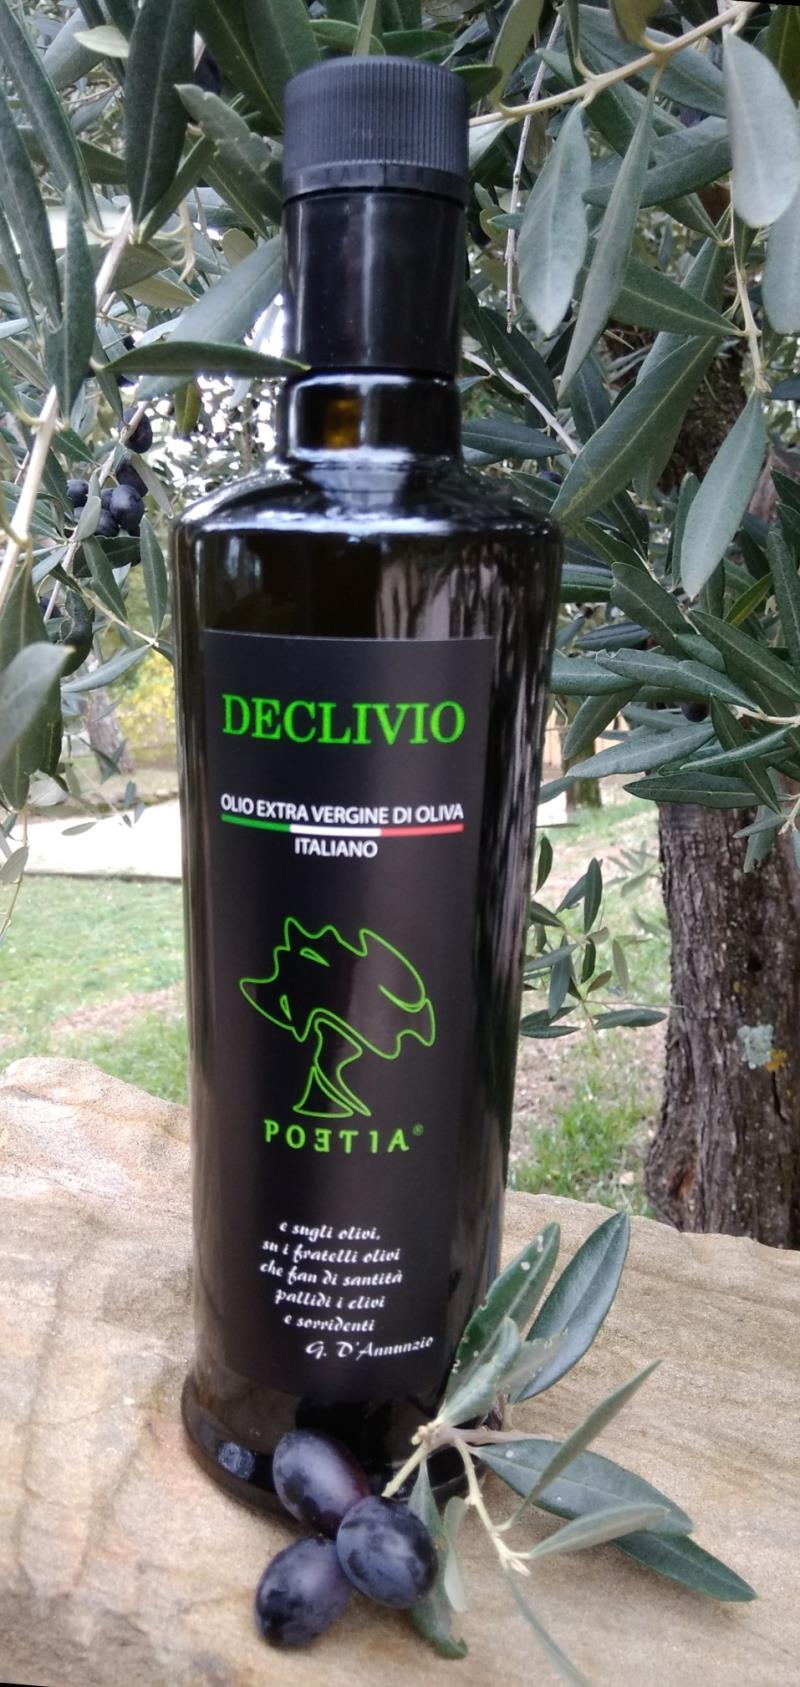 Olio extra vergine di oliva Declivio ml. 500